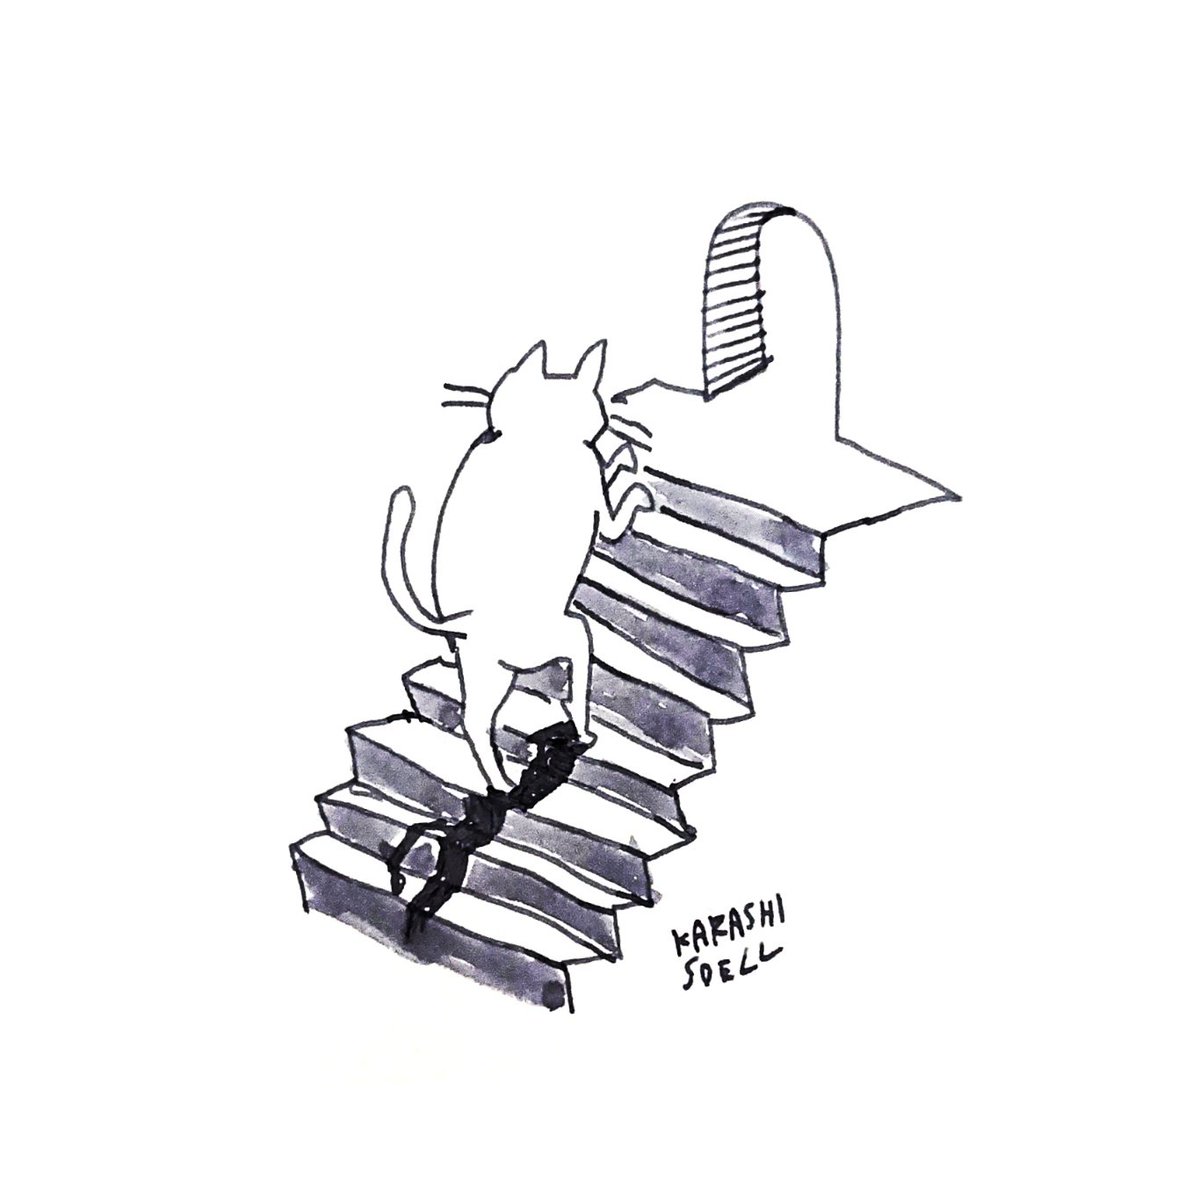 Twitter 上的 カラシソエル イラストレーター 今日のイラスト 階段をのぼる猫 今日のカラシイラスト T Co Ygaipfyufw Twitter